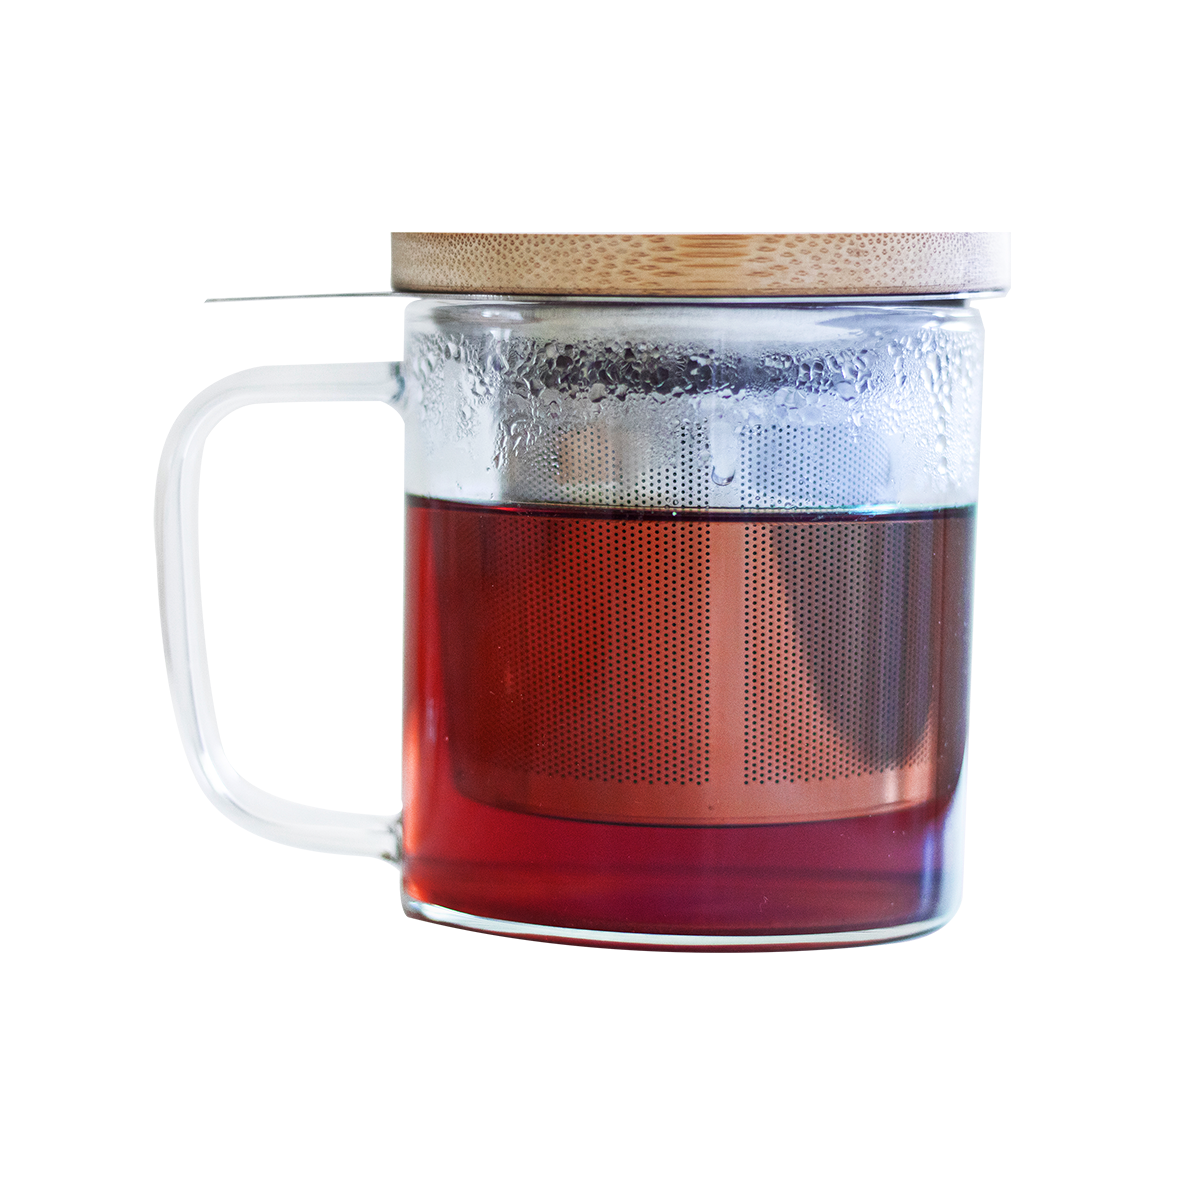 Pince à thé (diamètre 5cm) - Thé Bon Thé Bio - pour toutes les tasses